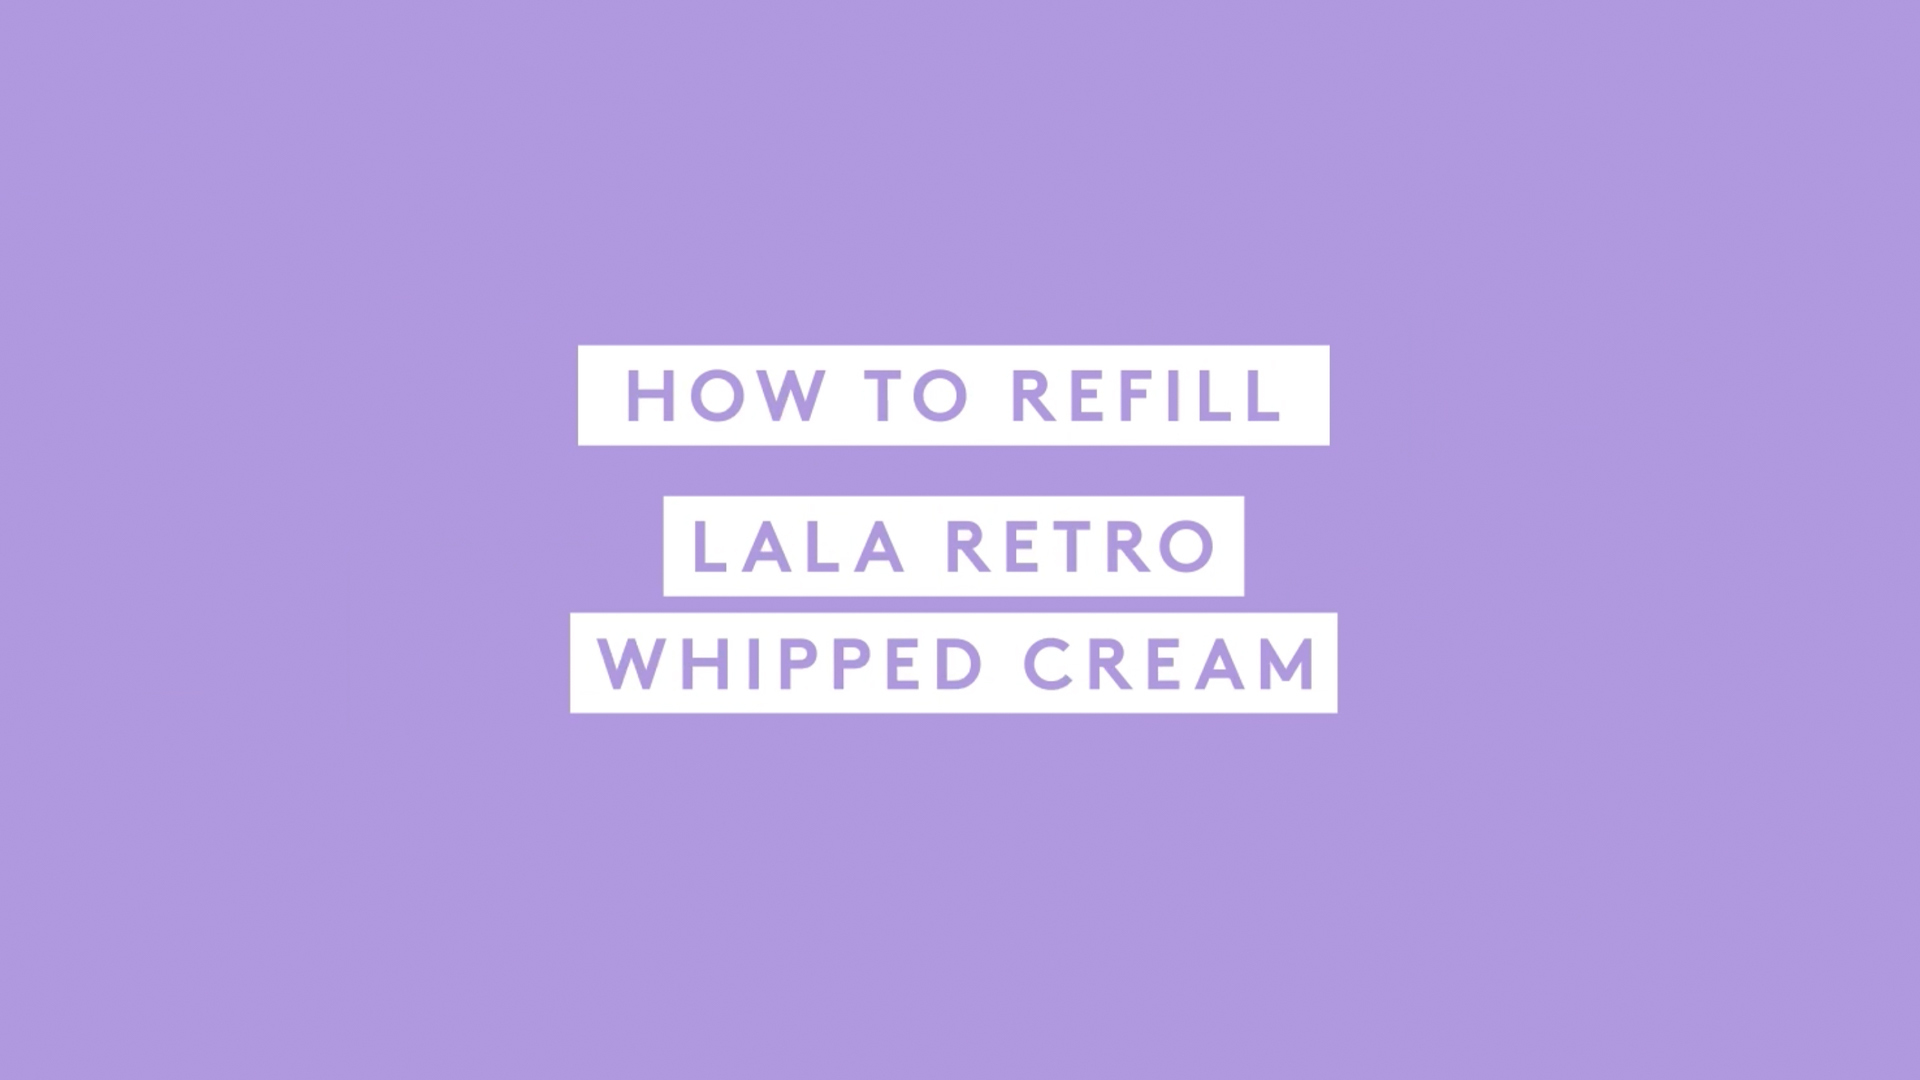  Video describing how to use Lala refill